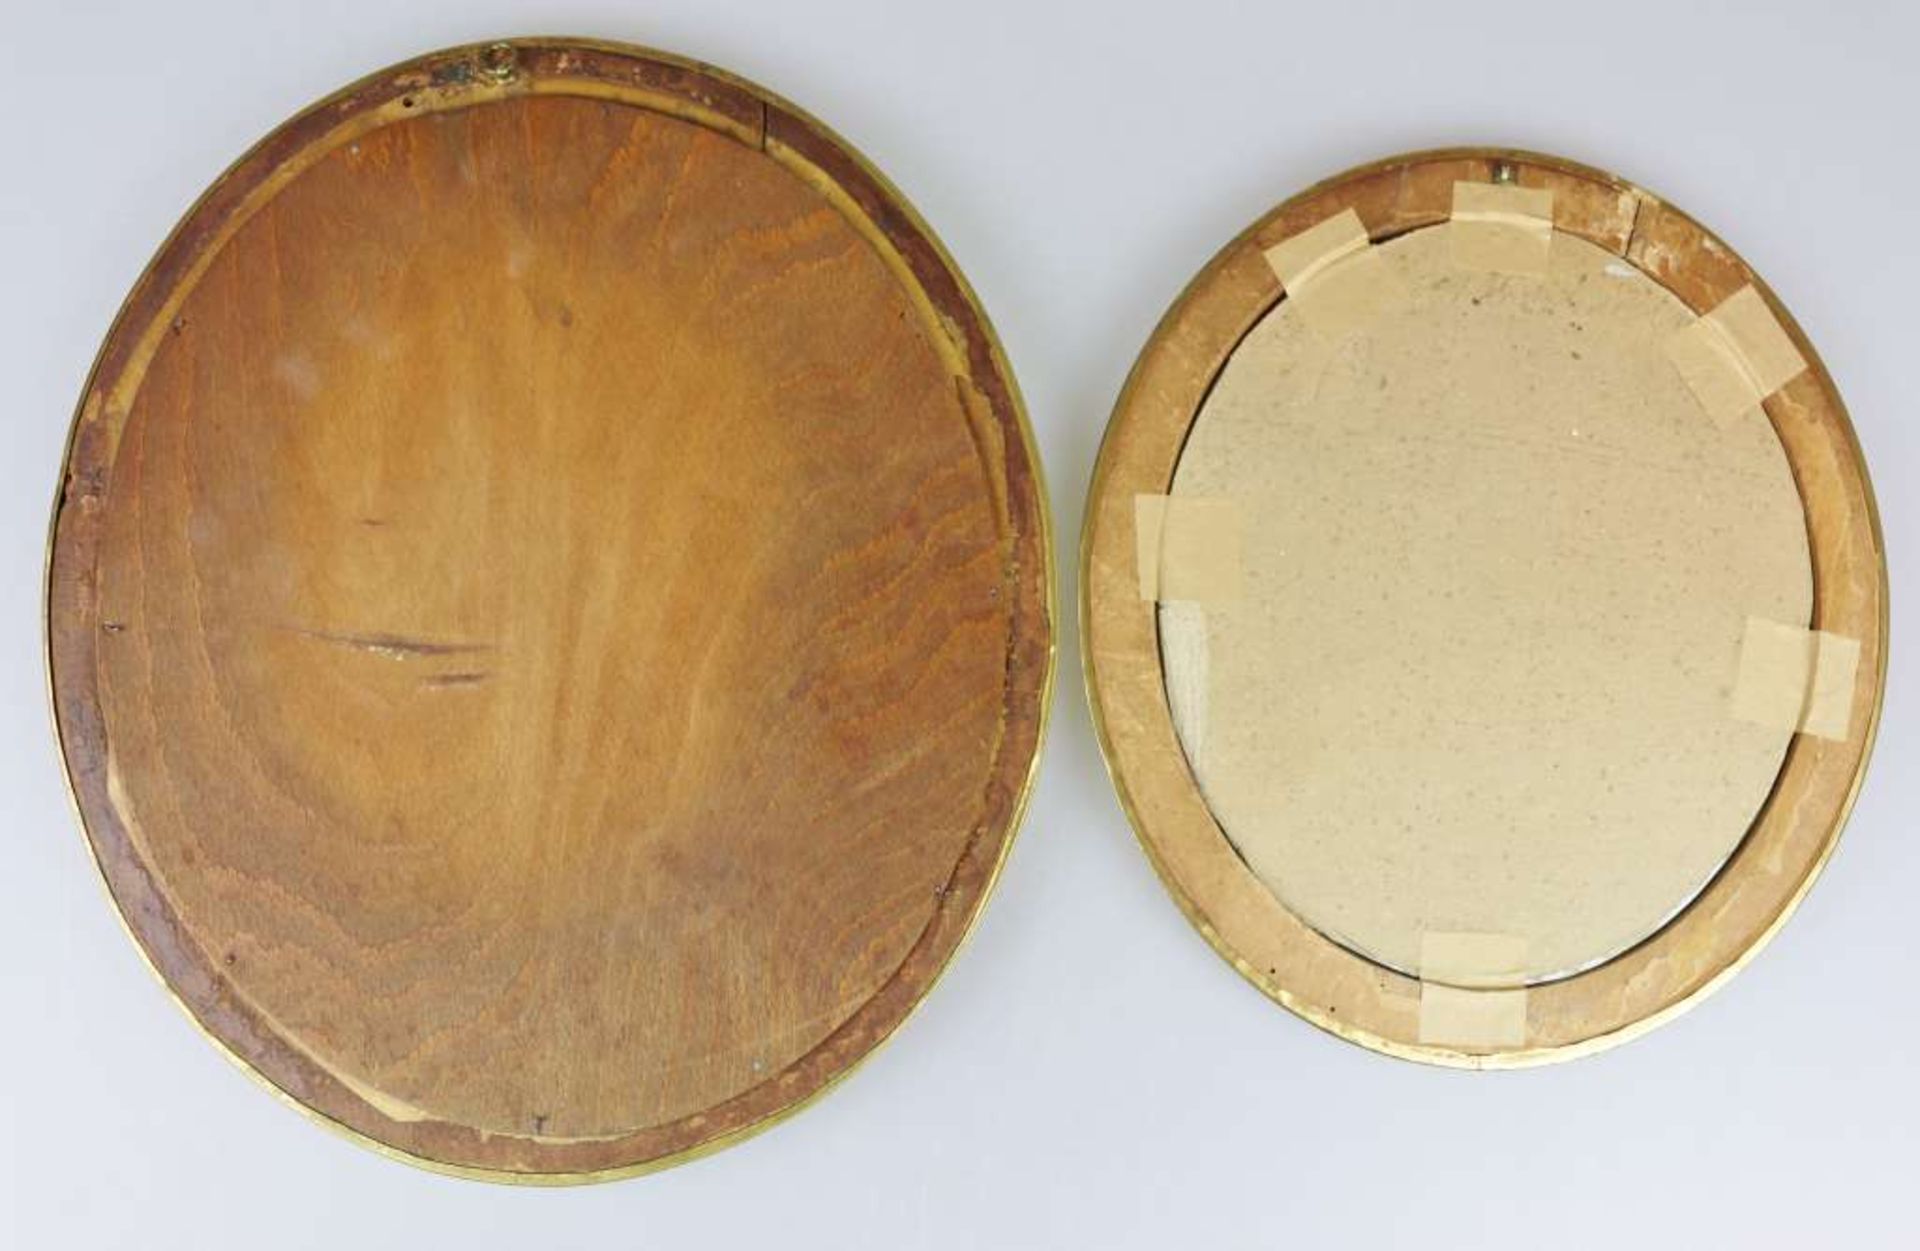 Paar ovale Rahmungen, goldfarbener Metallbeschlag auf Holz, Maße: ca. 43 x 38 bzw. 35,5 x 31,5 cm, - Bild 2 aus 2